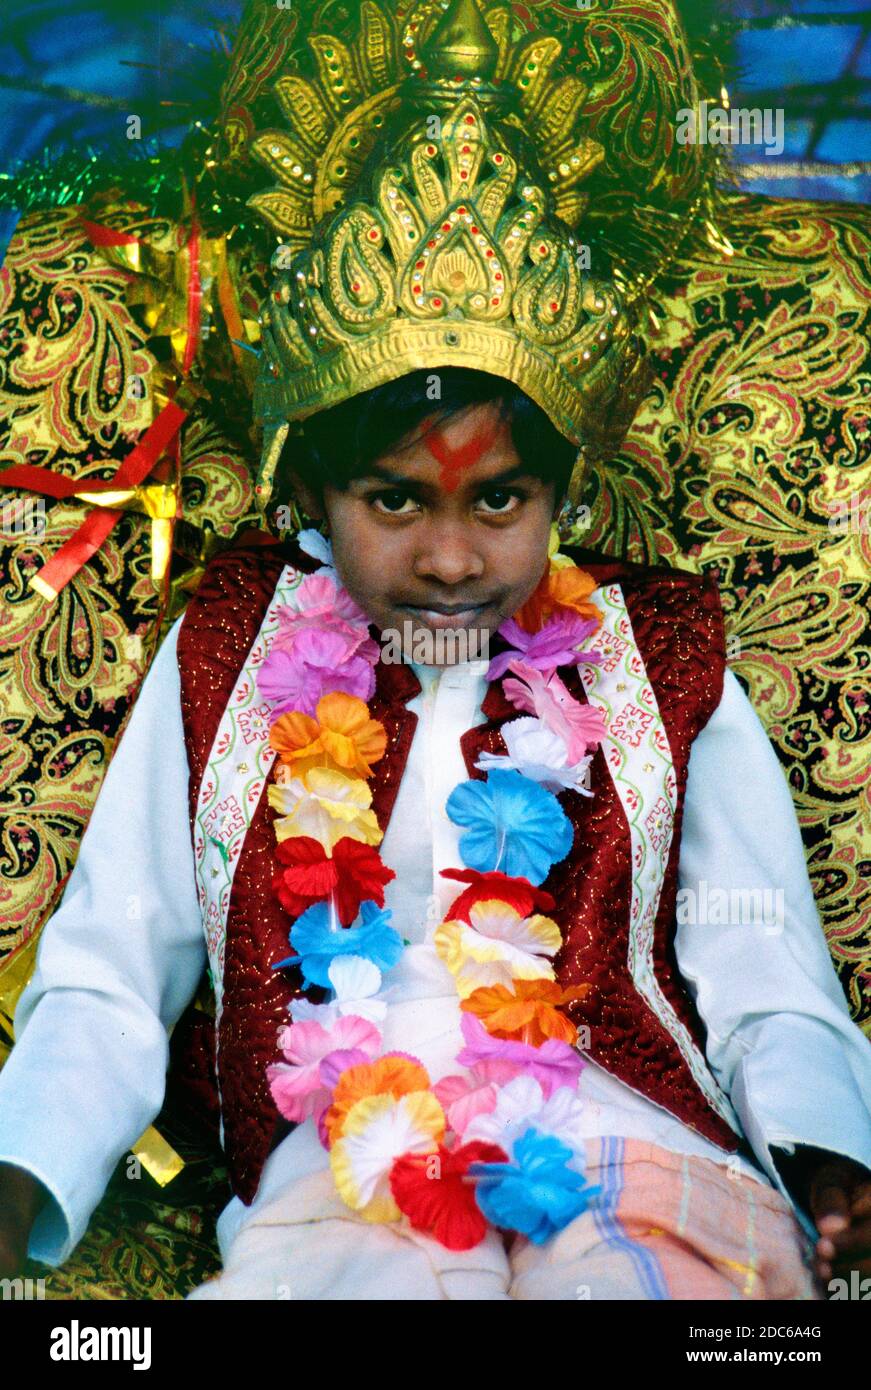 Porträt eines jungen Indianers oder eines hinduistischen Jungen, gekleidet als Prinz und drapiert mit Blumengirlanden für Diwali, oder das indische Lichterfest in Réunion Island Frankreich Stockfoto